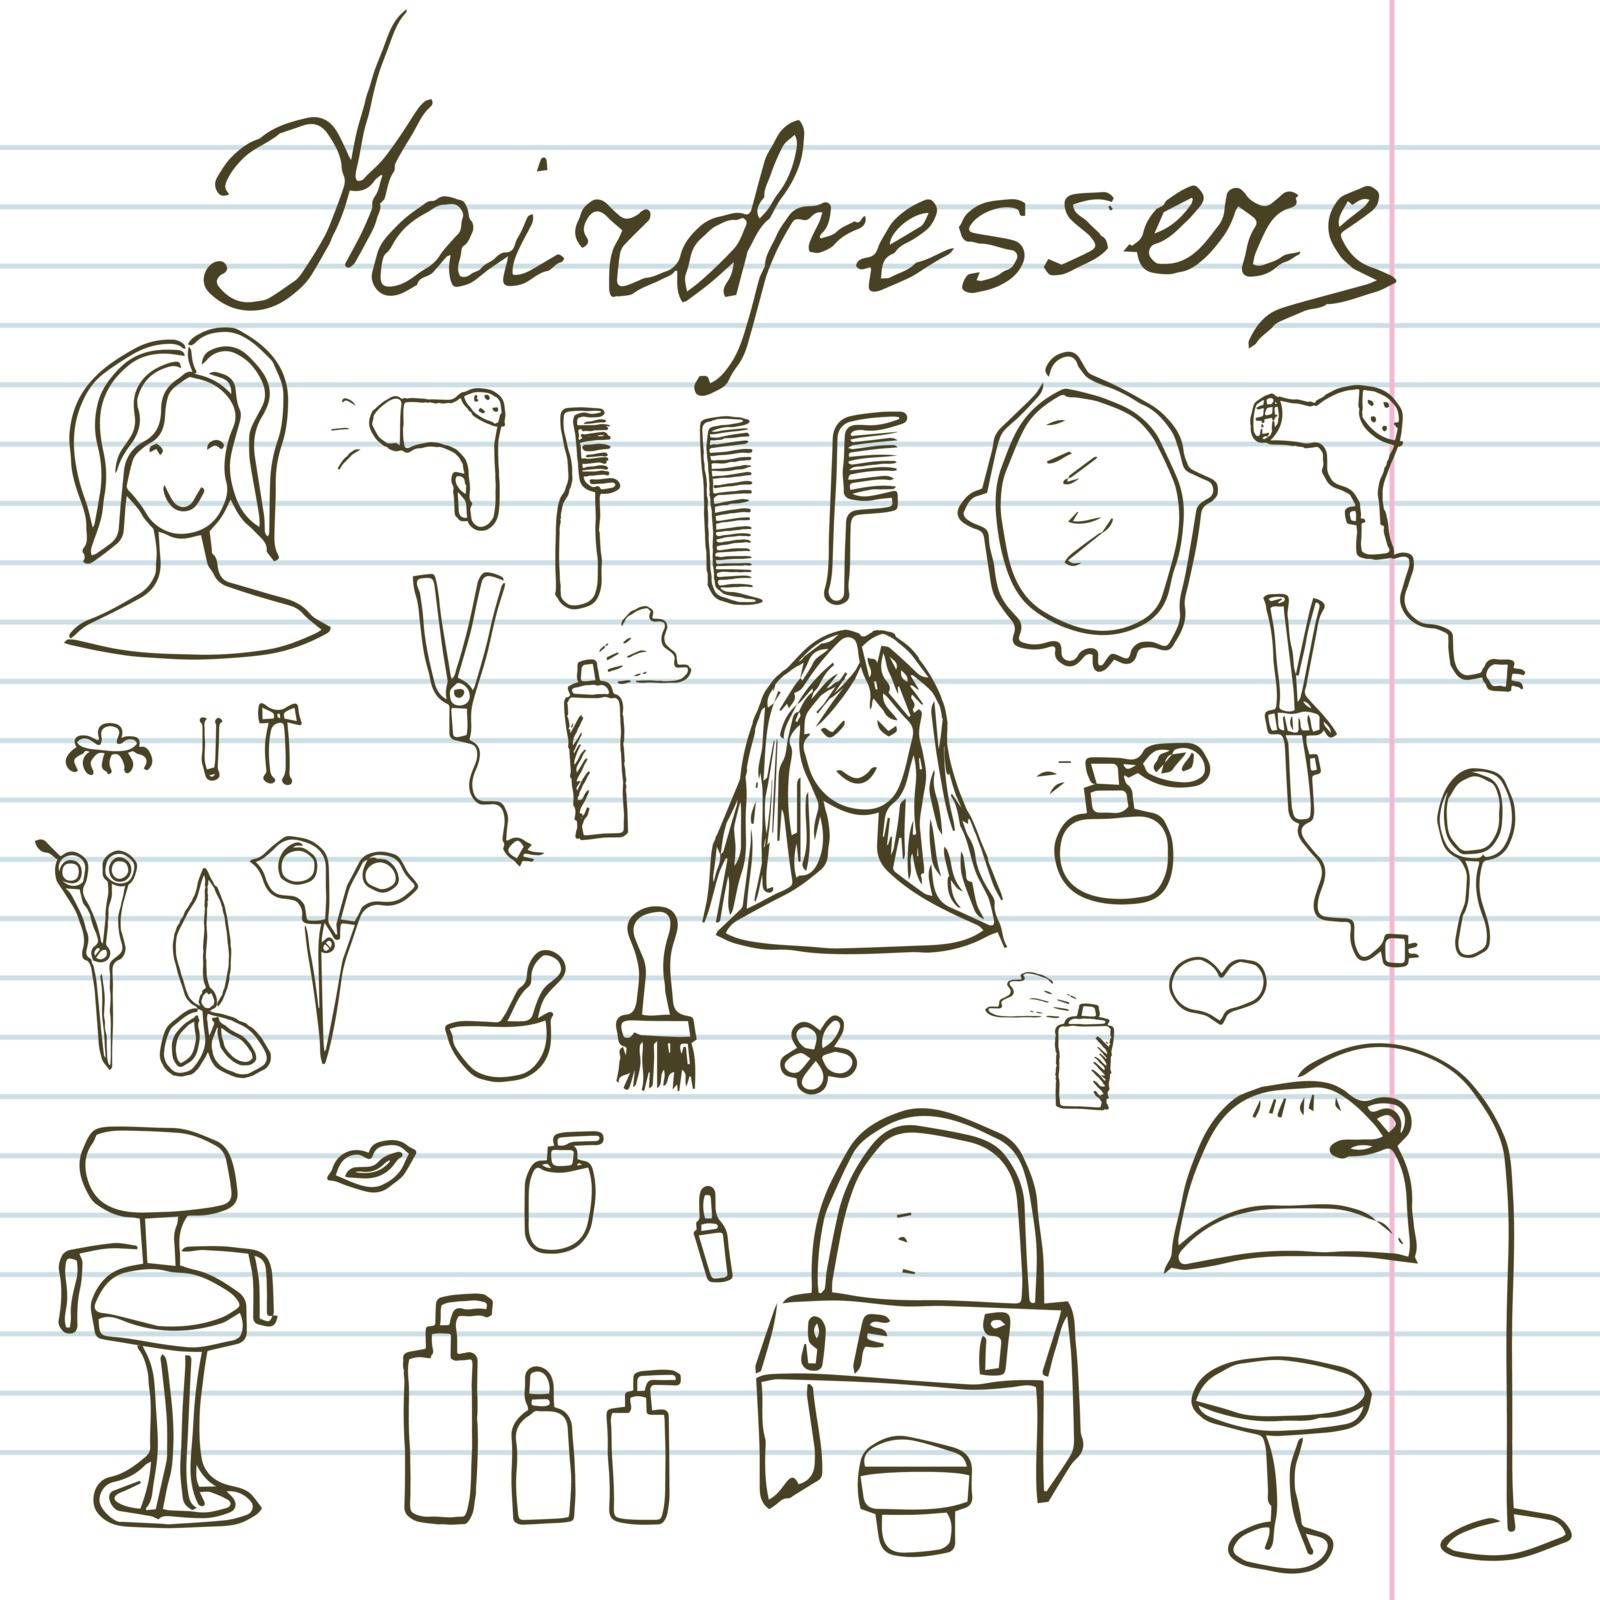 Hairdresser equipment doodles set. Hand-drawn sketch vector illustration, on paper notebook by Lemon_workshop